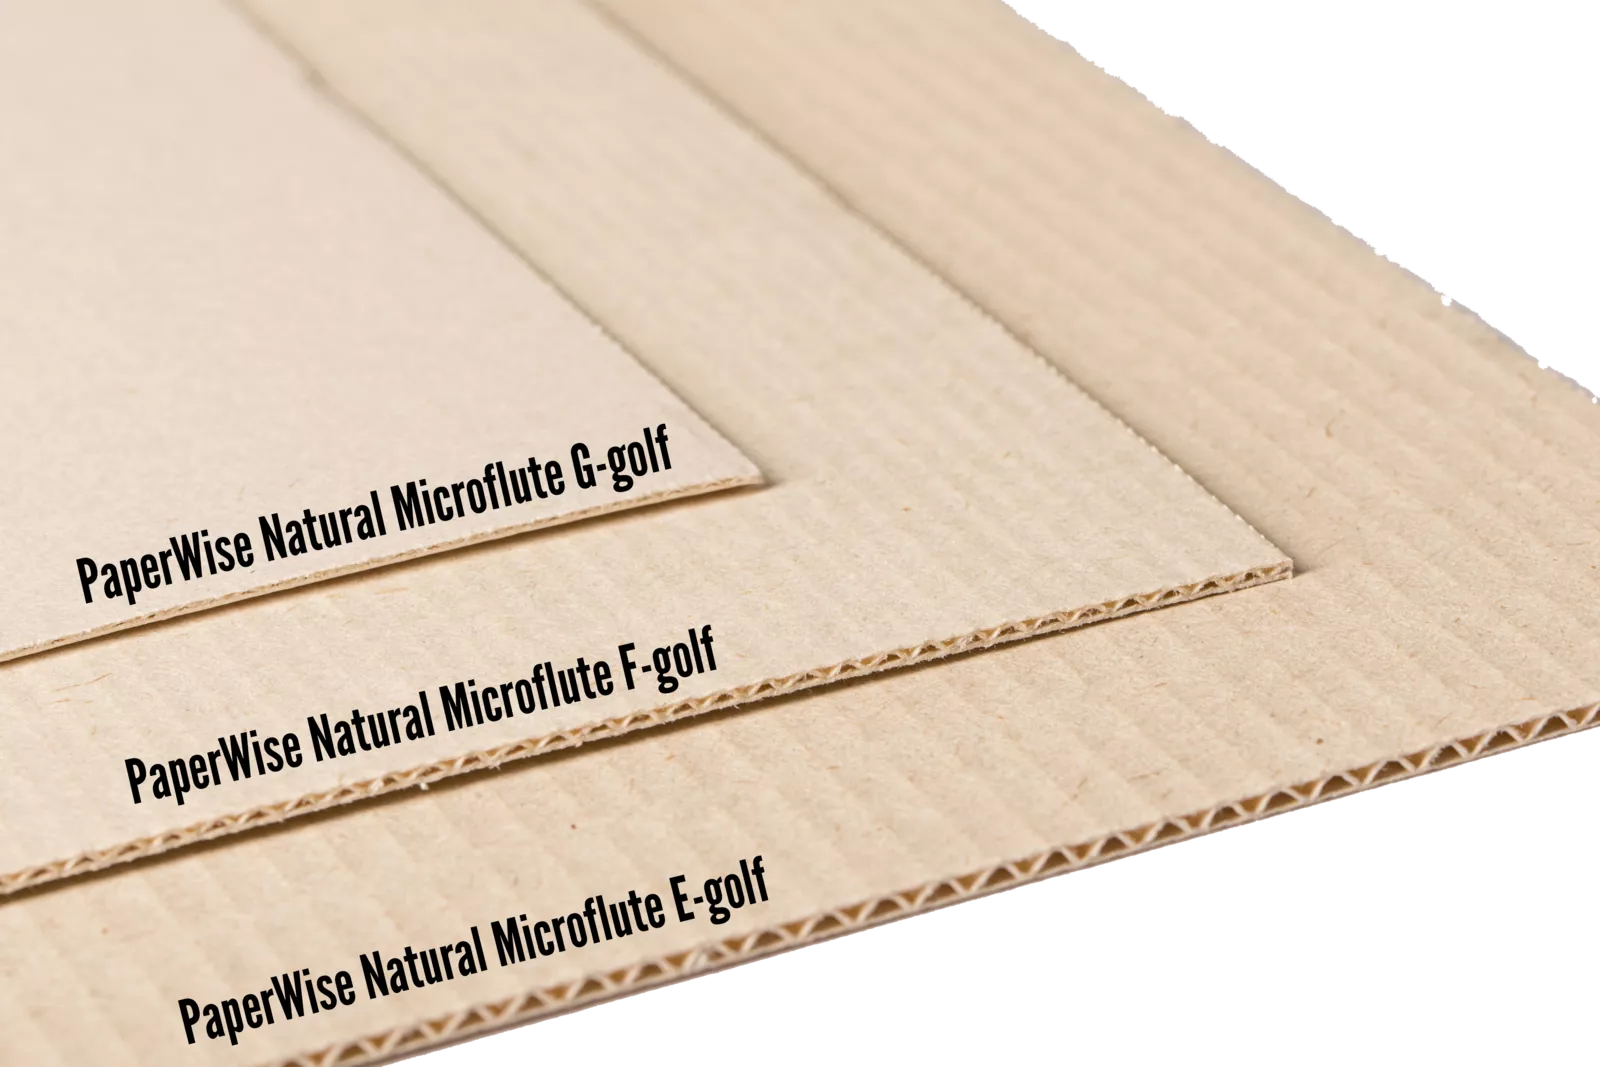 PaperWise Microflute E F G eco friendy board corrugatedc